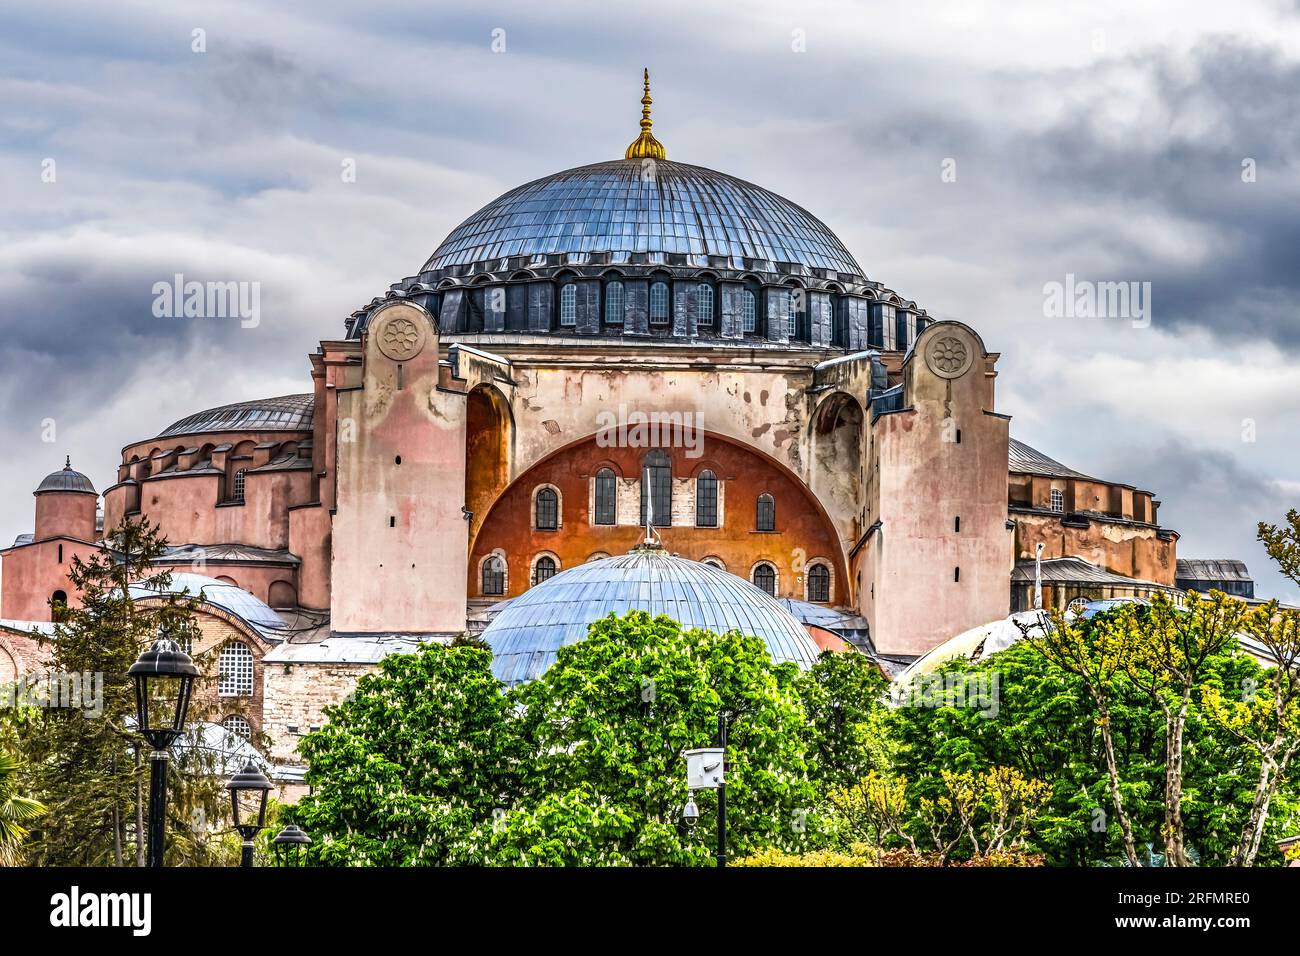 Hagia Sophia Moschee Istanbul Türkei. Kaiser Justinian erbaute Kathedrale von Konstantinopel im Jahr 537 v. Chr., die größte christliche Kirche seit über 1000 Jahren. Im Jahr 1 Stockfoto